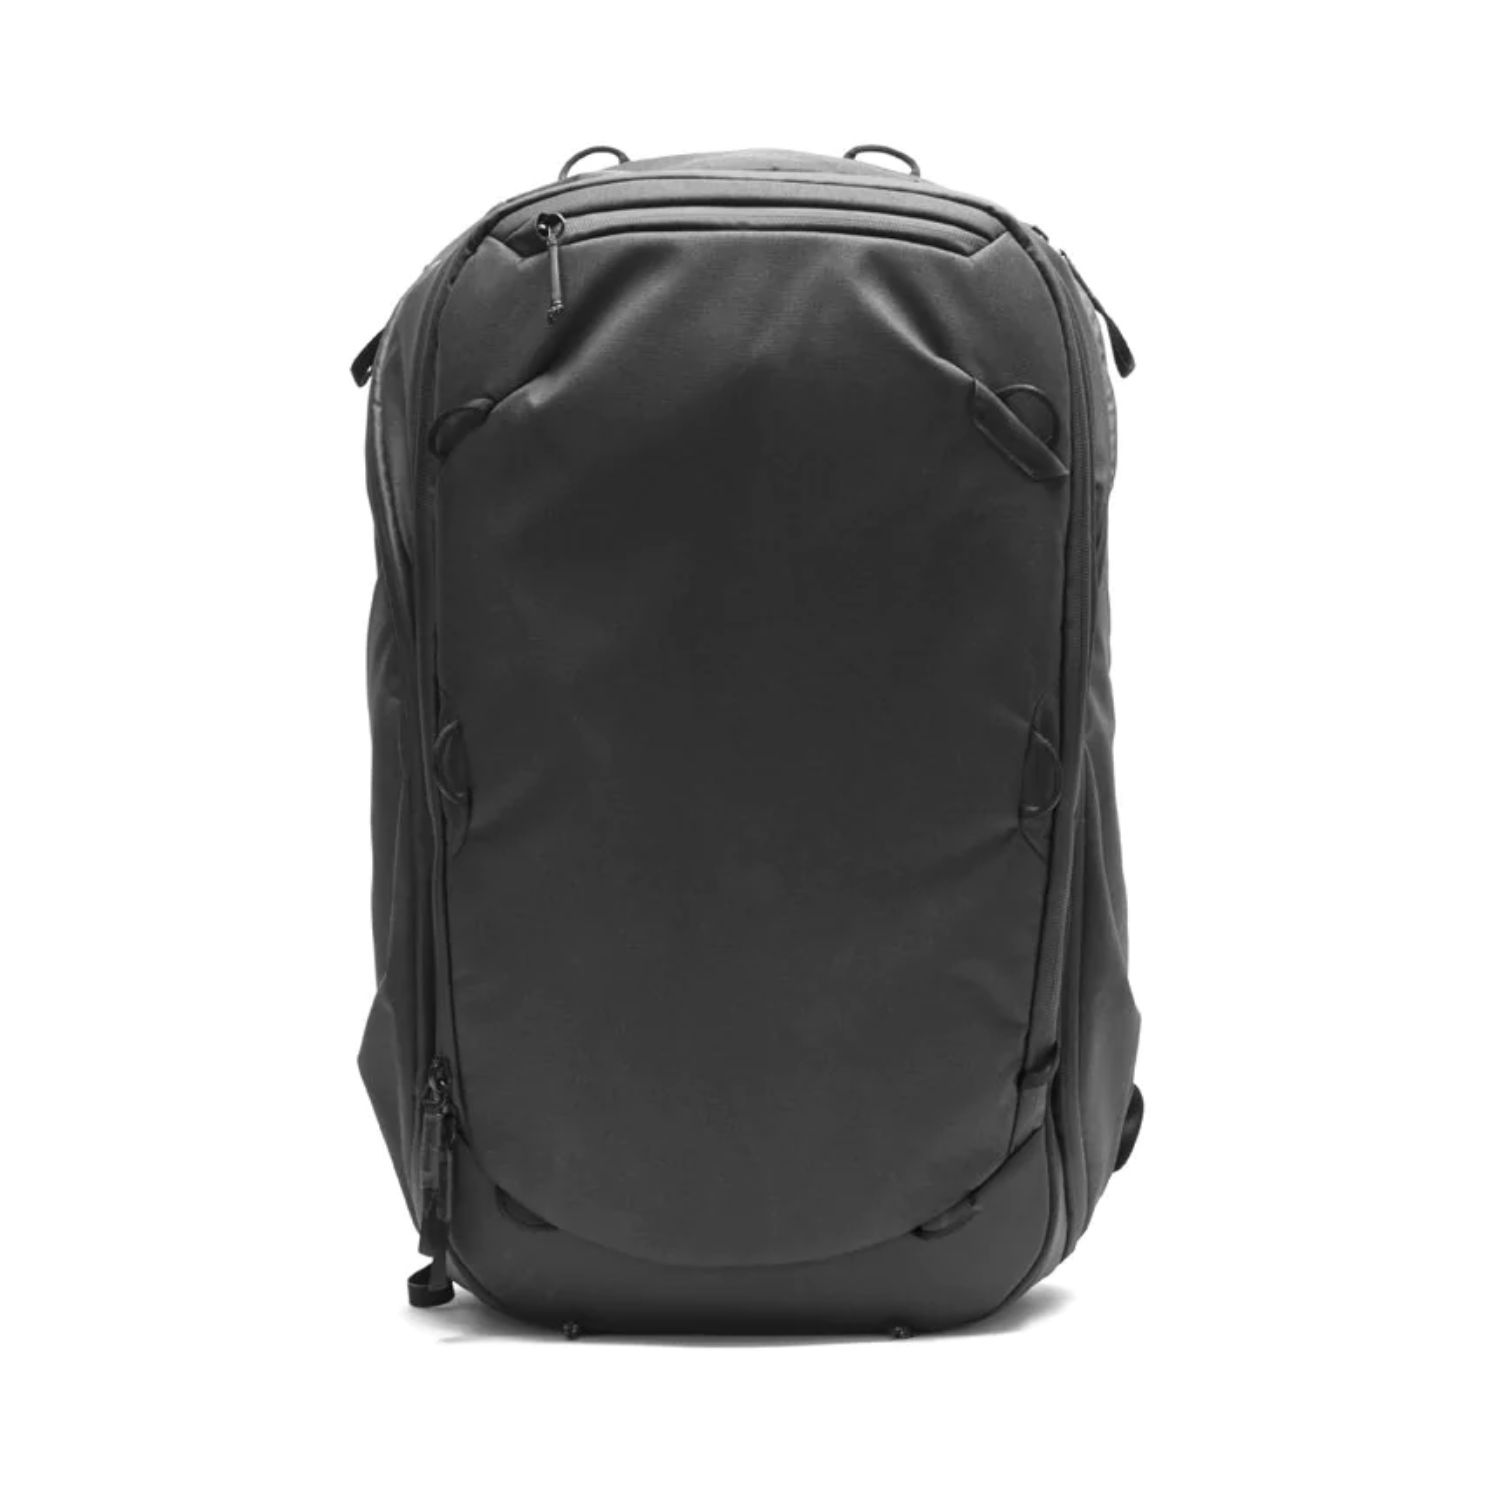 Peak design onebag travel